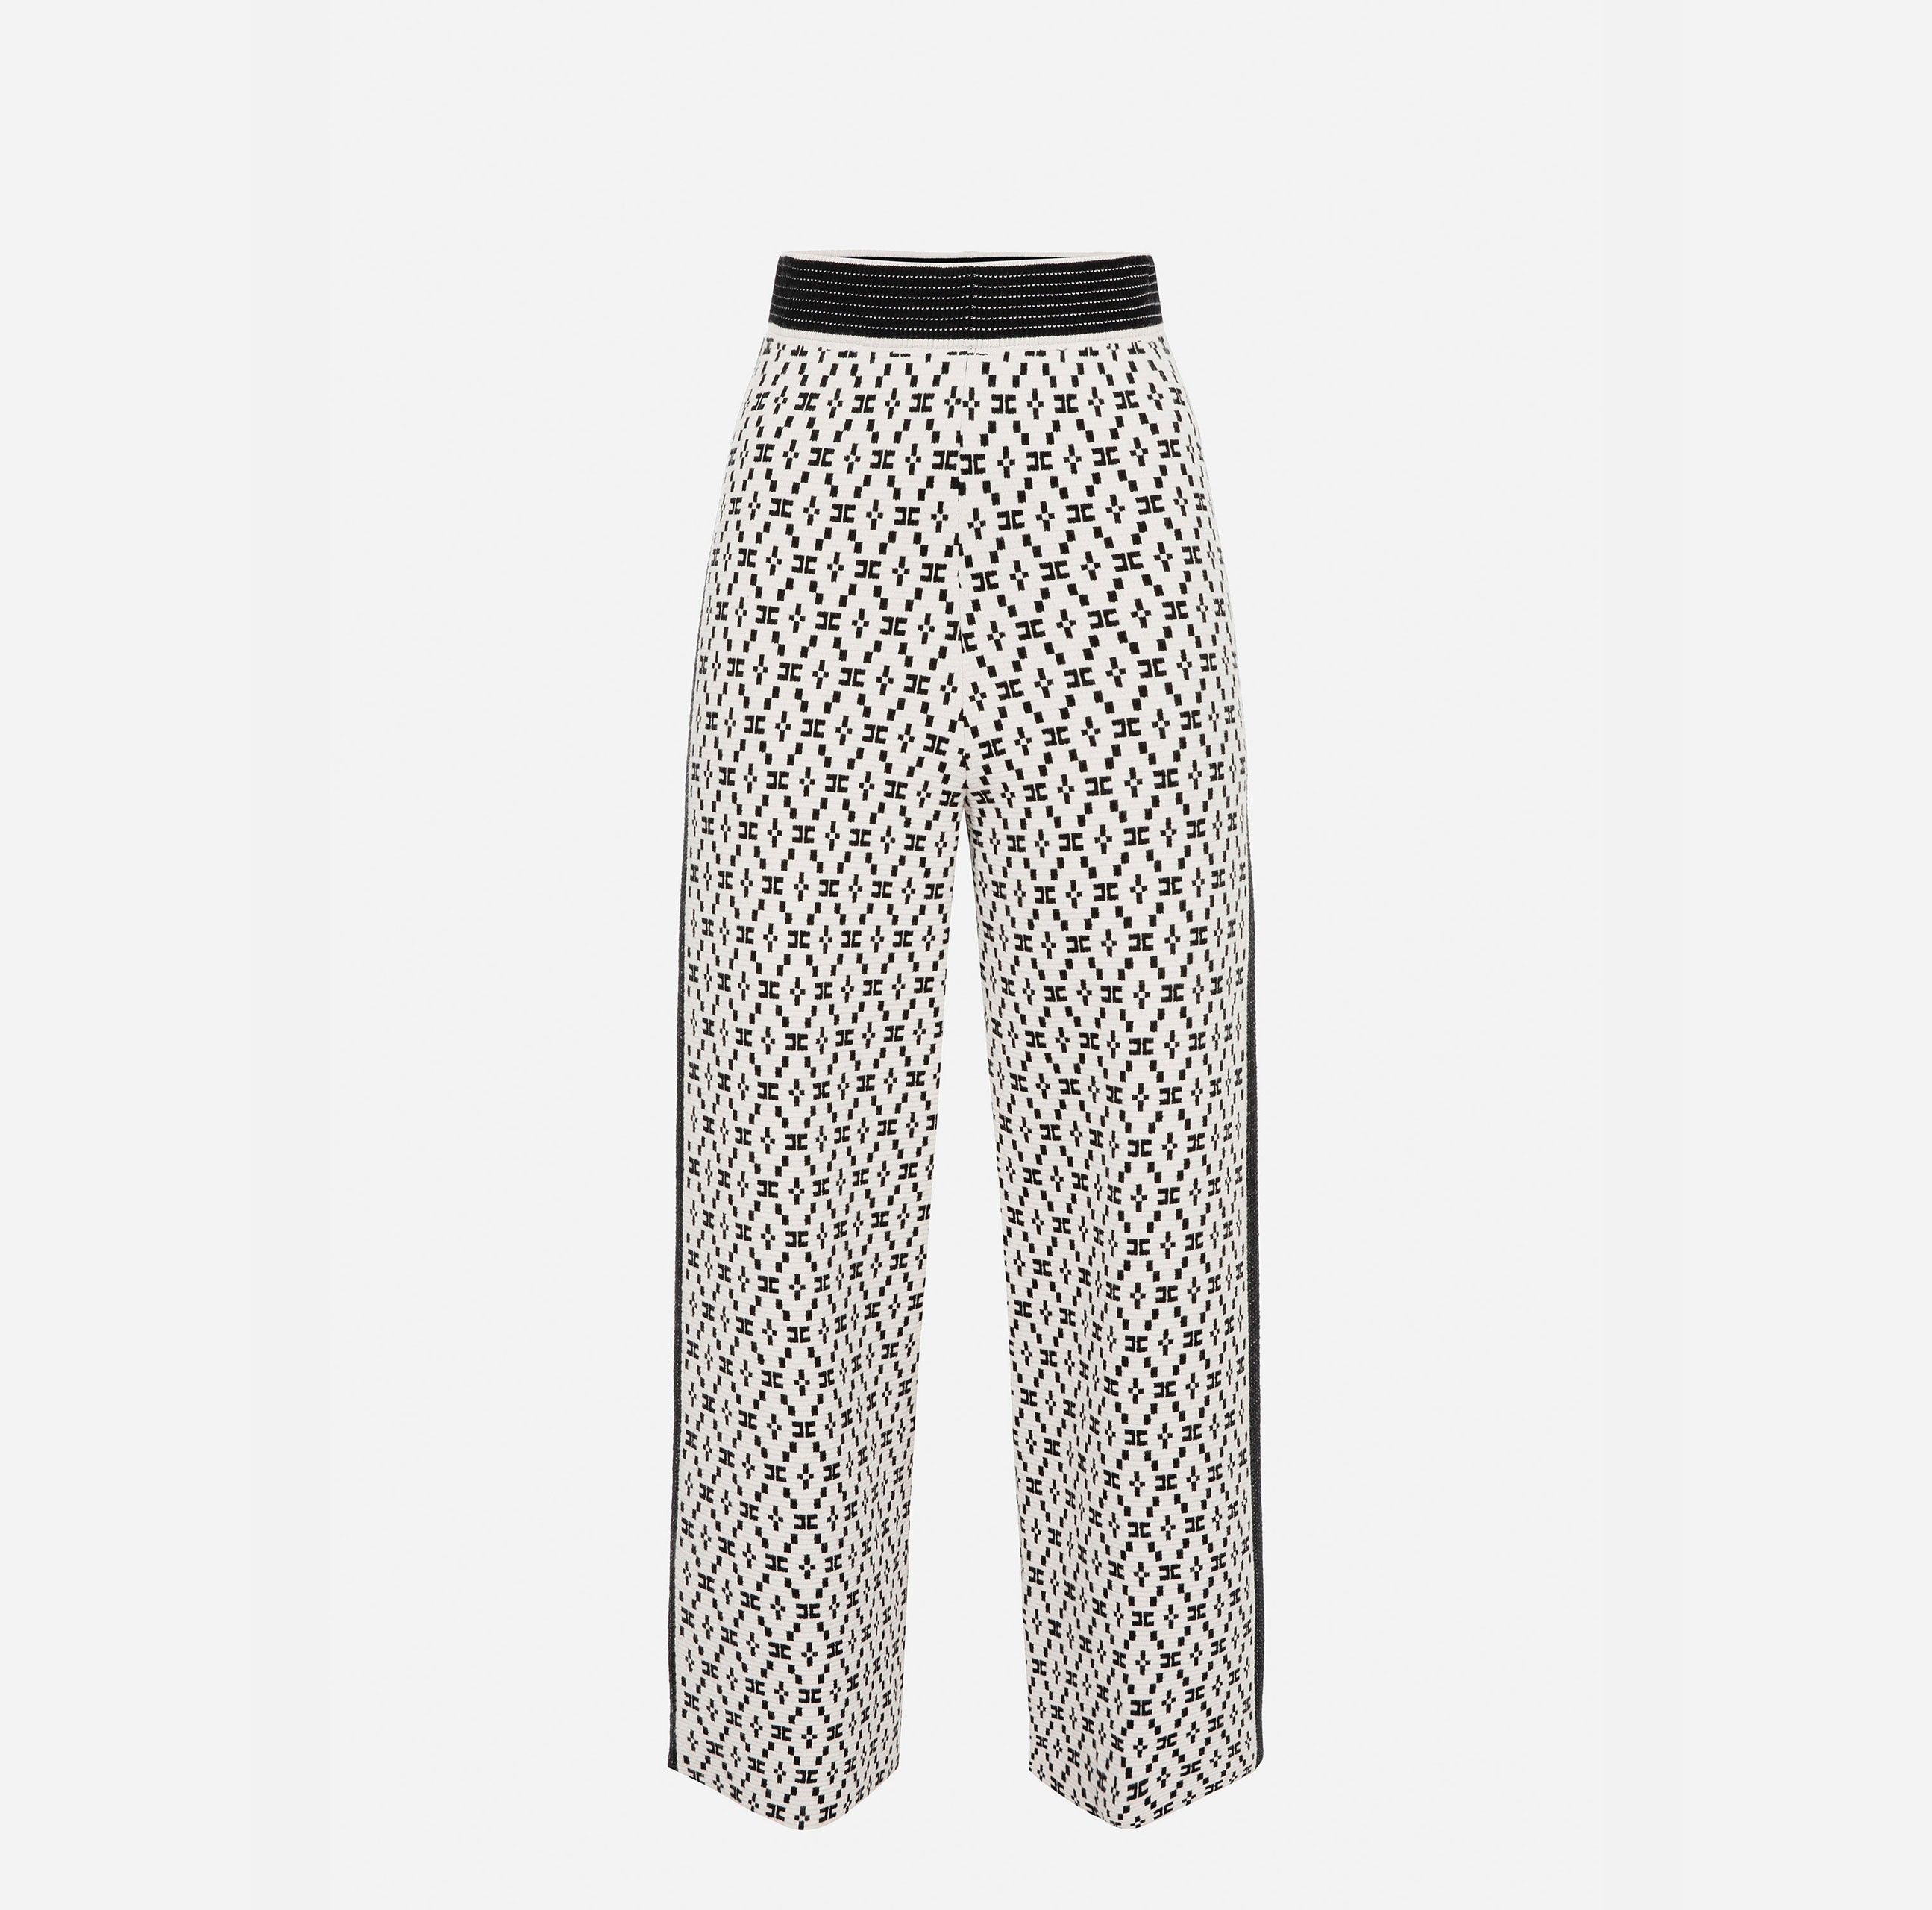 Palazzo trousers with diamond pattern - Elisabetta Franchi